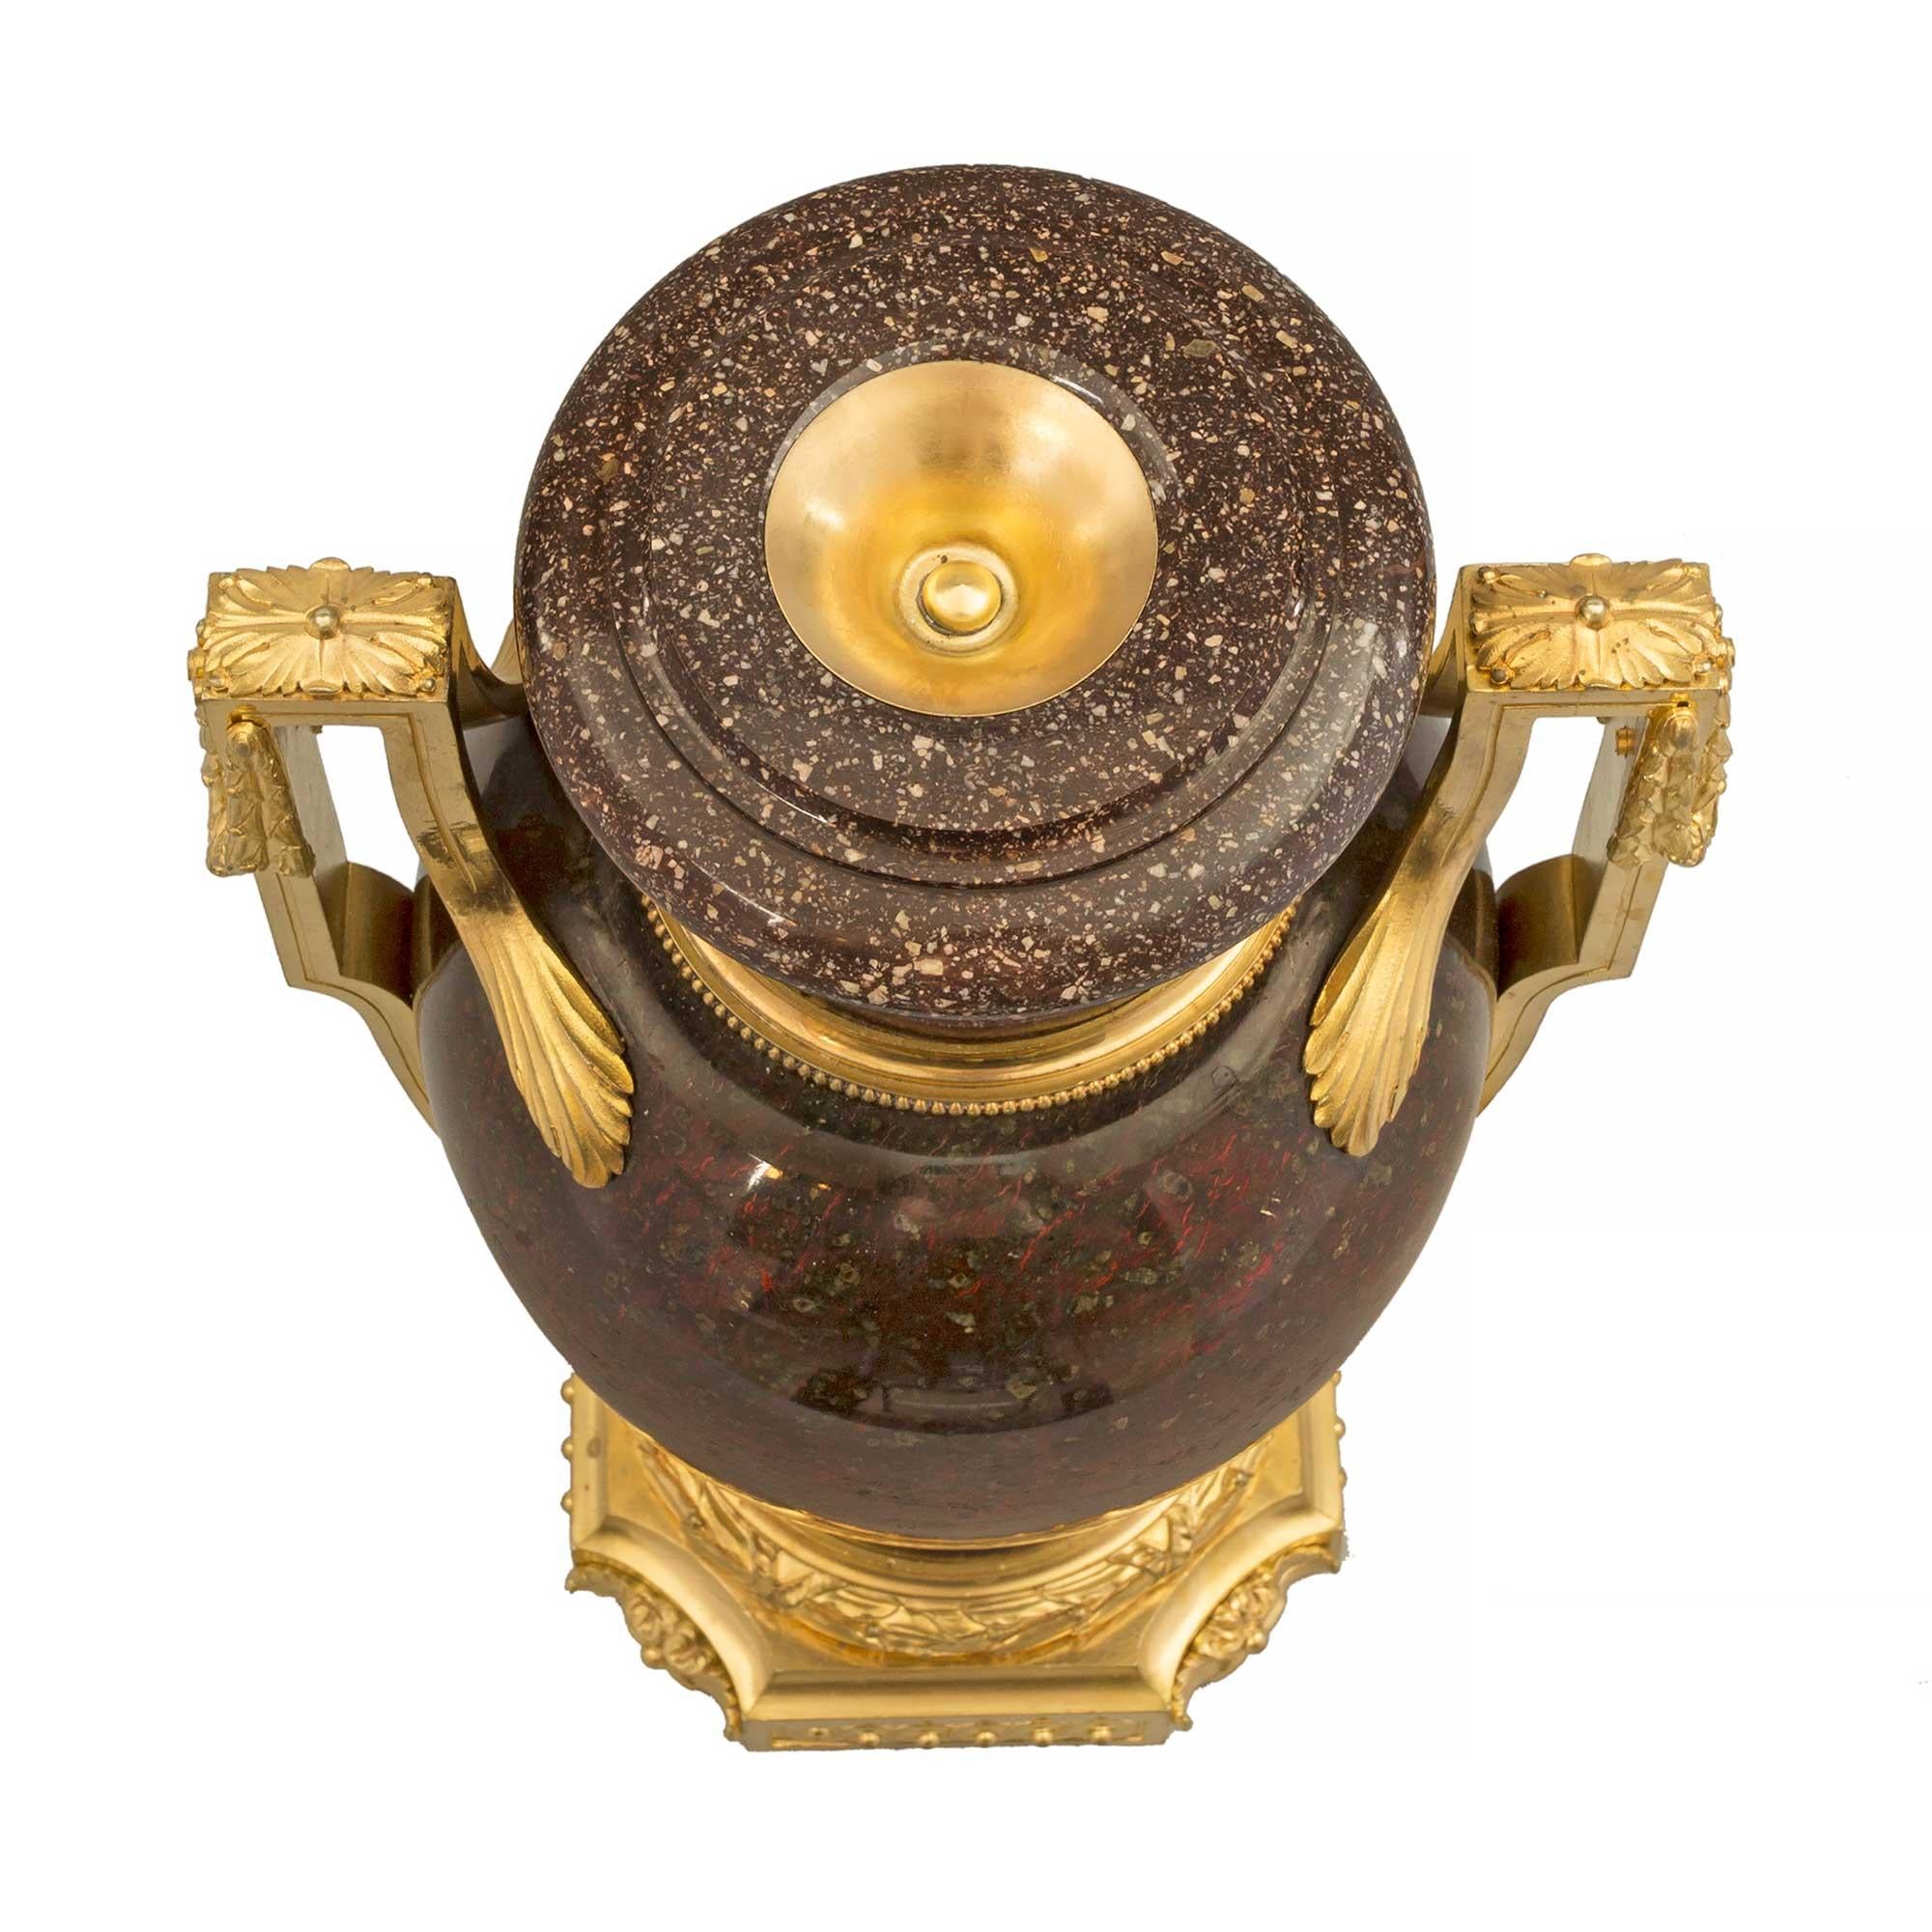 Une étonnante et rare paire d'urnes en porcelaine et bronze doré de style Louis XVI, datant du début du XIXe siècle. Les urnes sont surmontées d'une base carrée aux angles concaves, avec des rosettes de feuillage richement ciselées et centrées sur